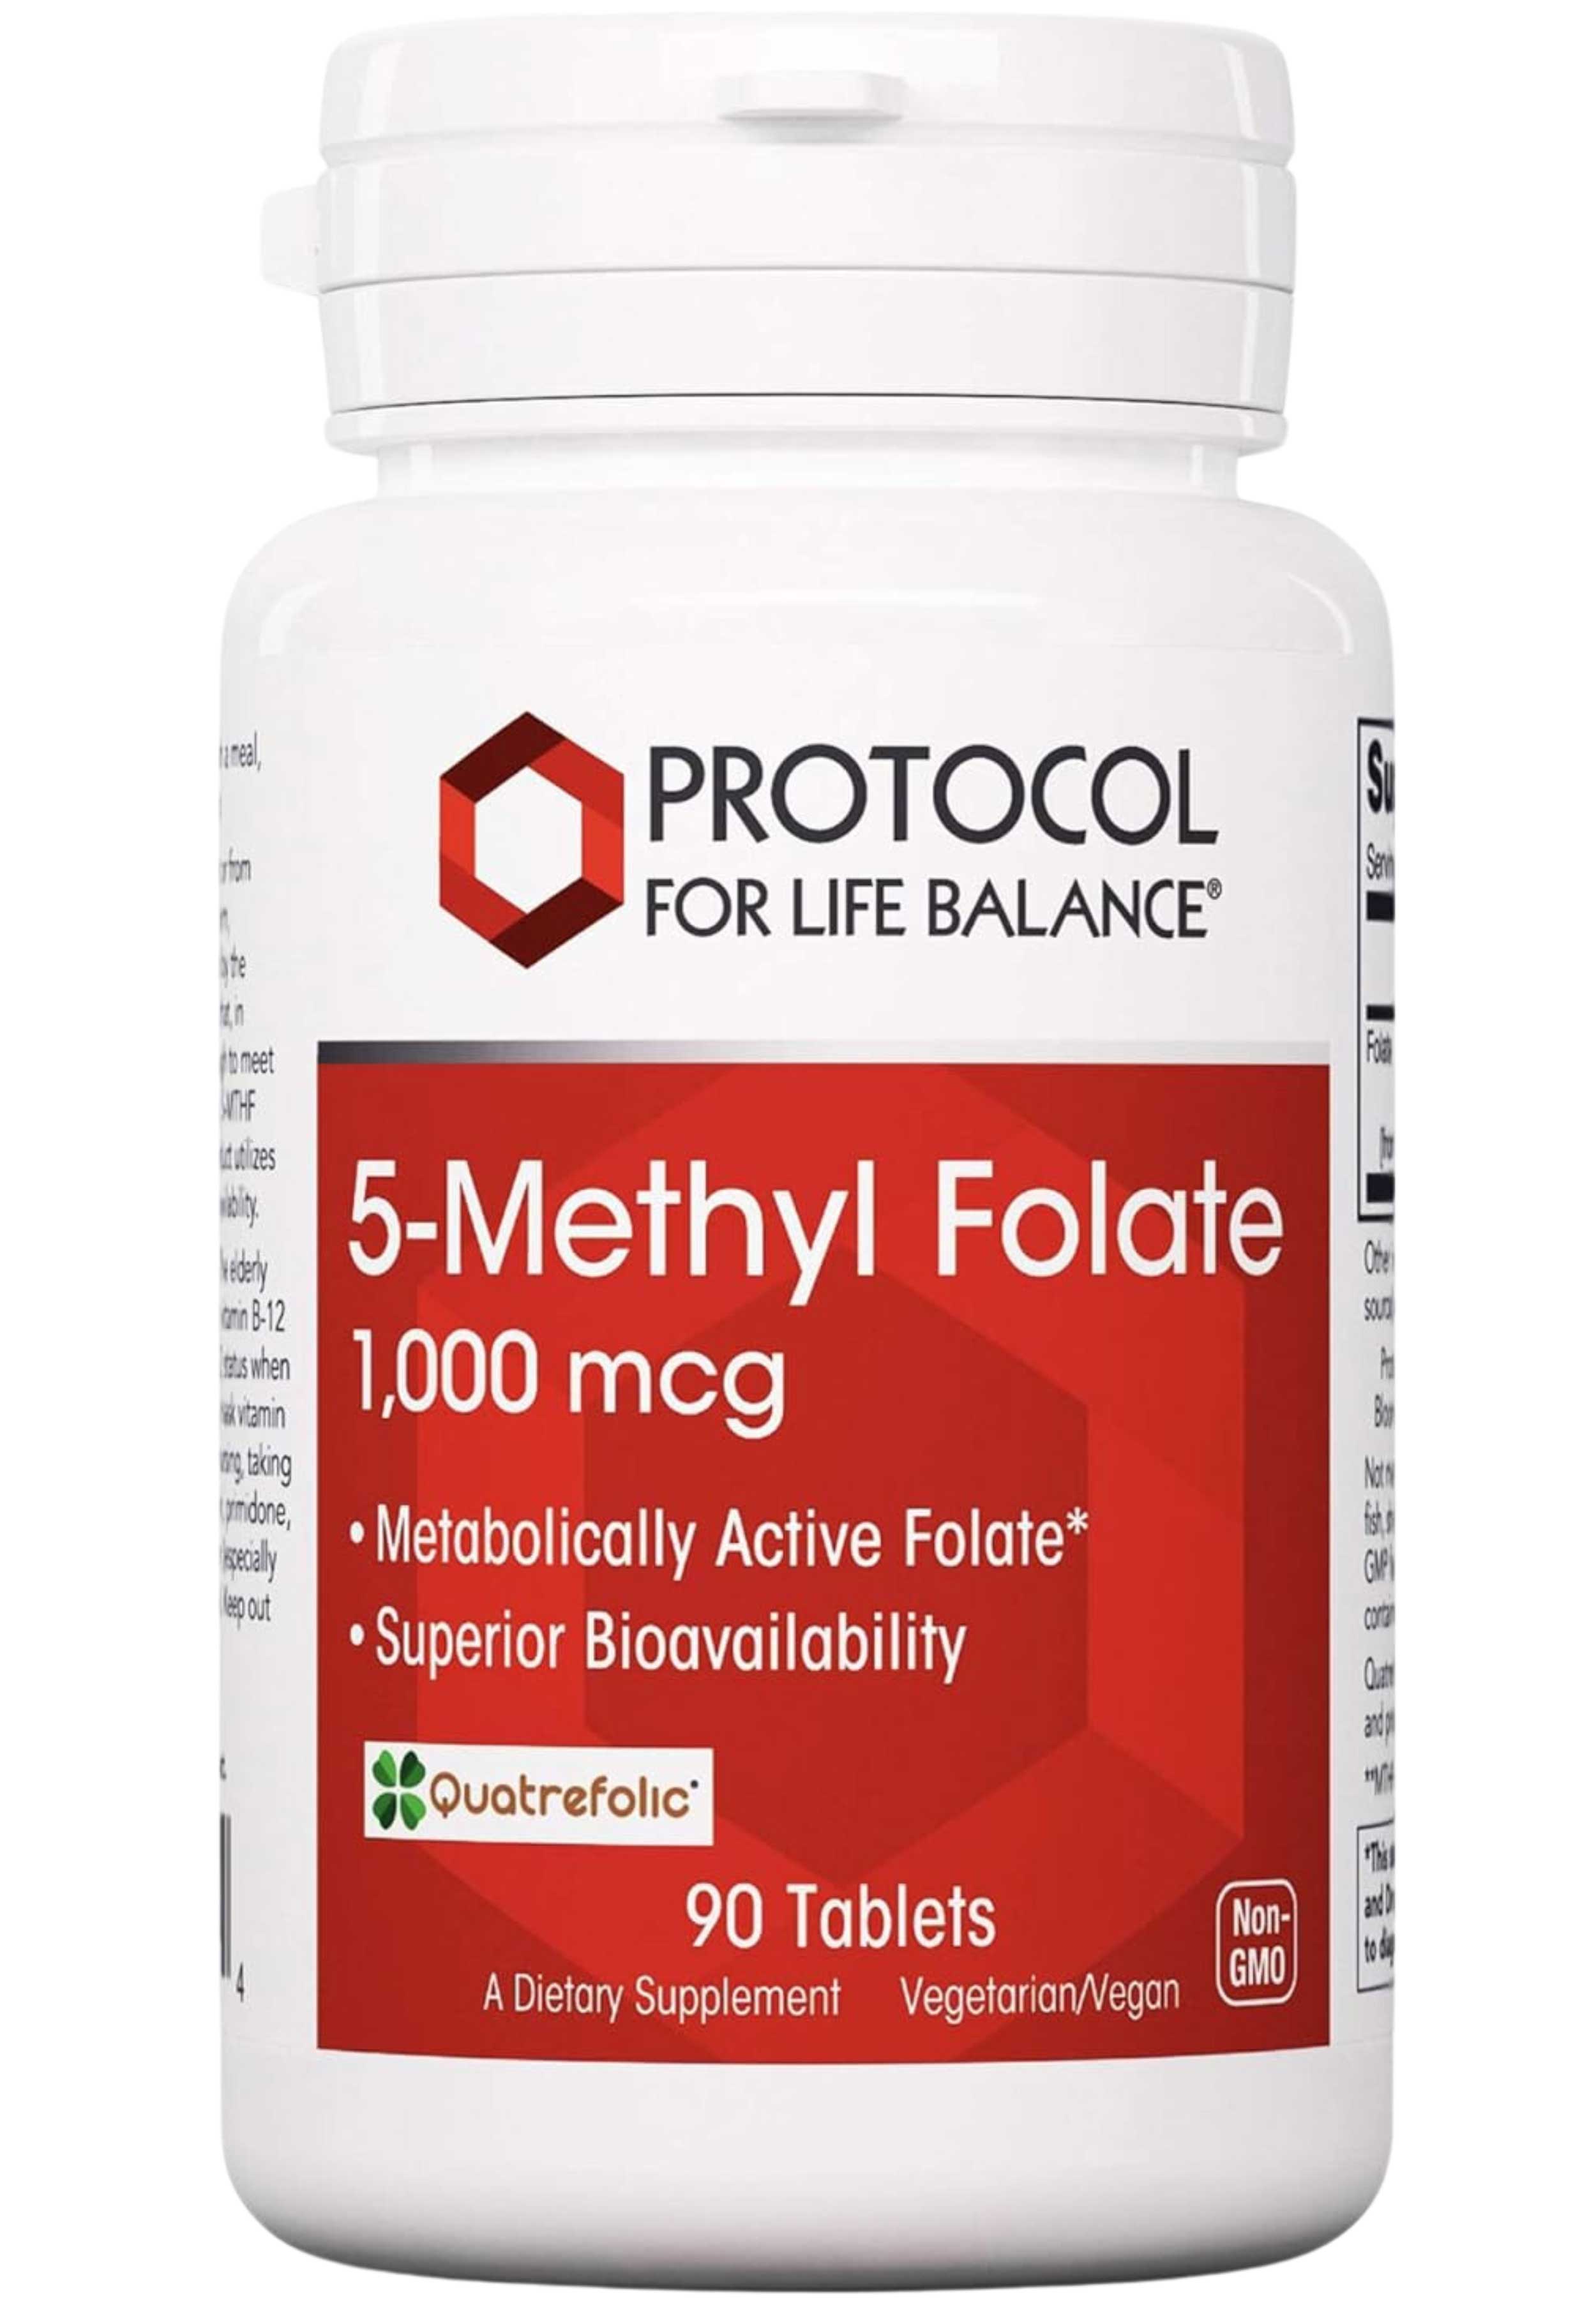 Protocol for Life Balance 5-Methyl Folate